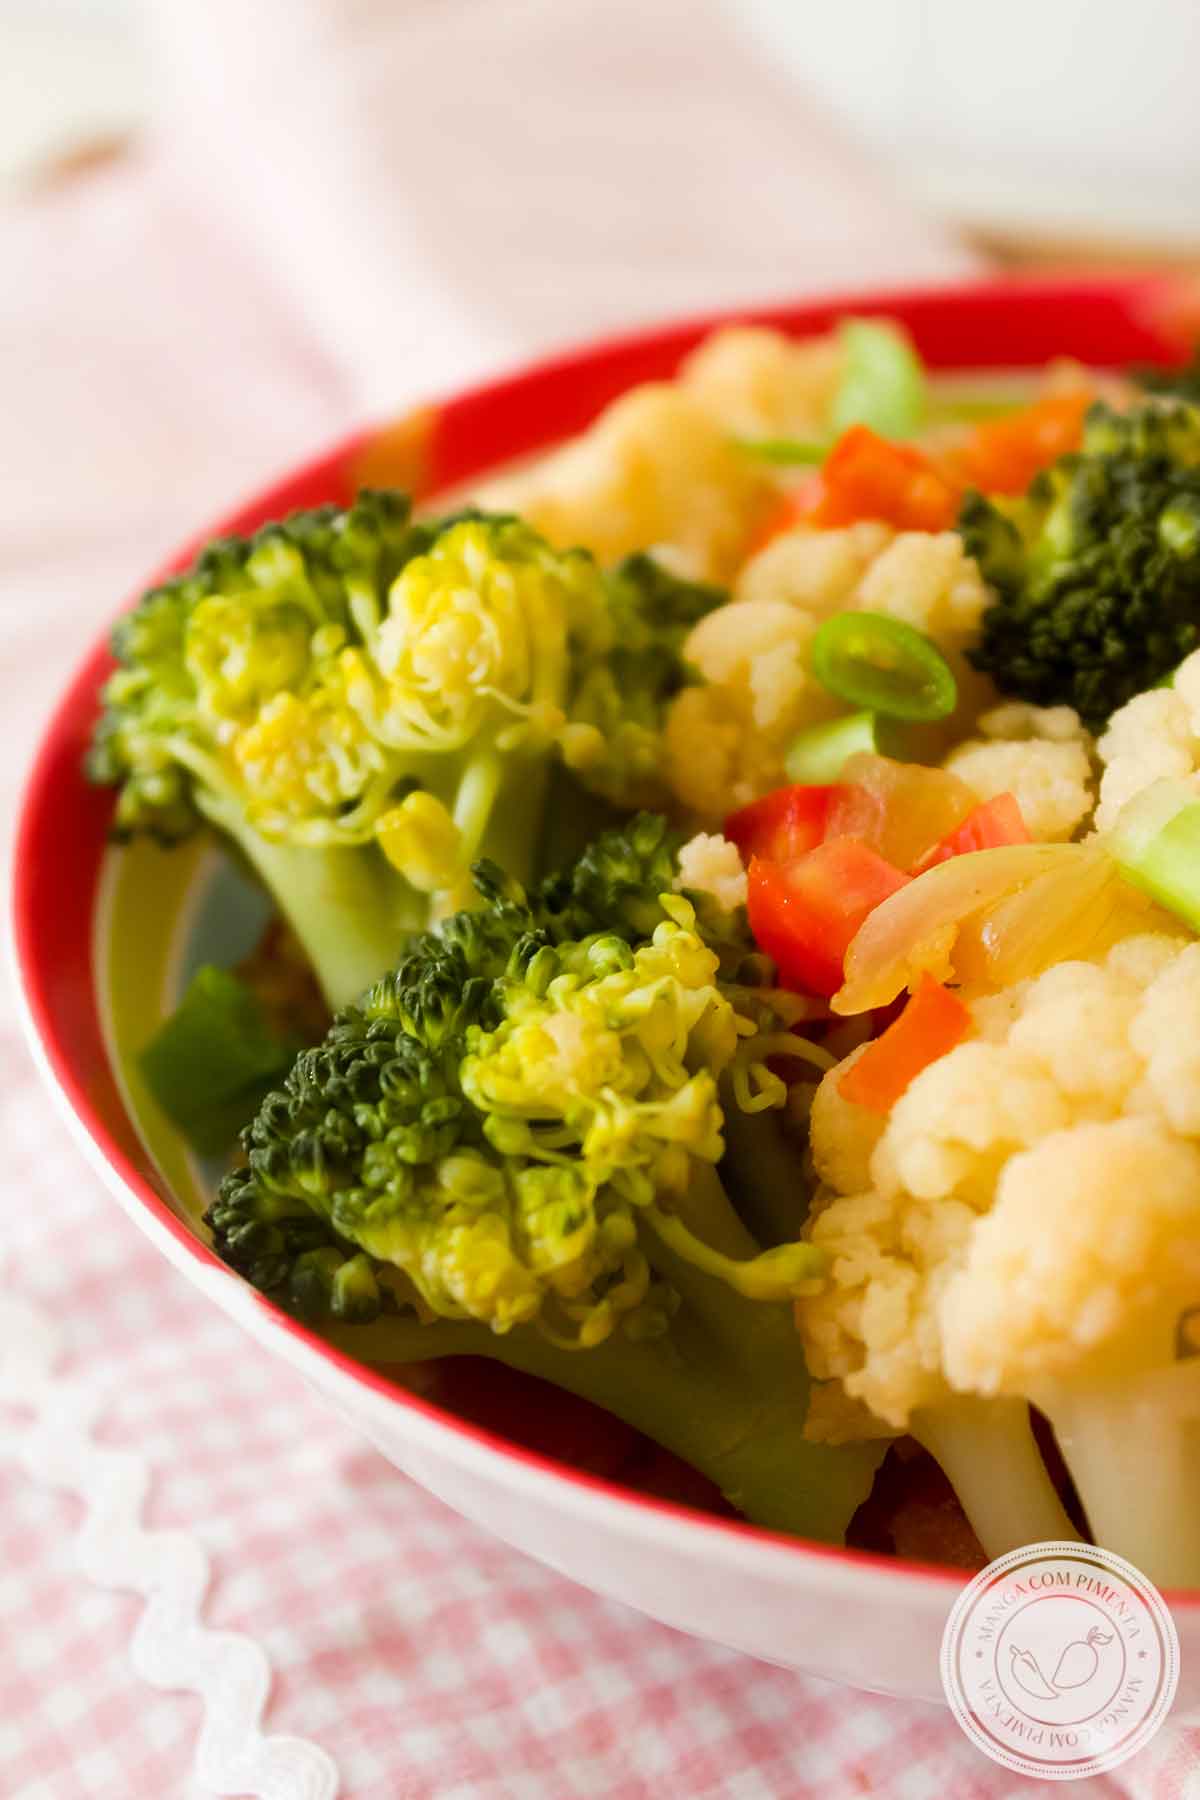 Receitas de Legumes Refogados: Refogado de Brócolis e Couve-flor - um delicioso acompanhamento para o almoço da semana.